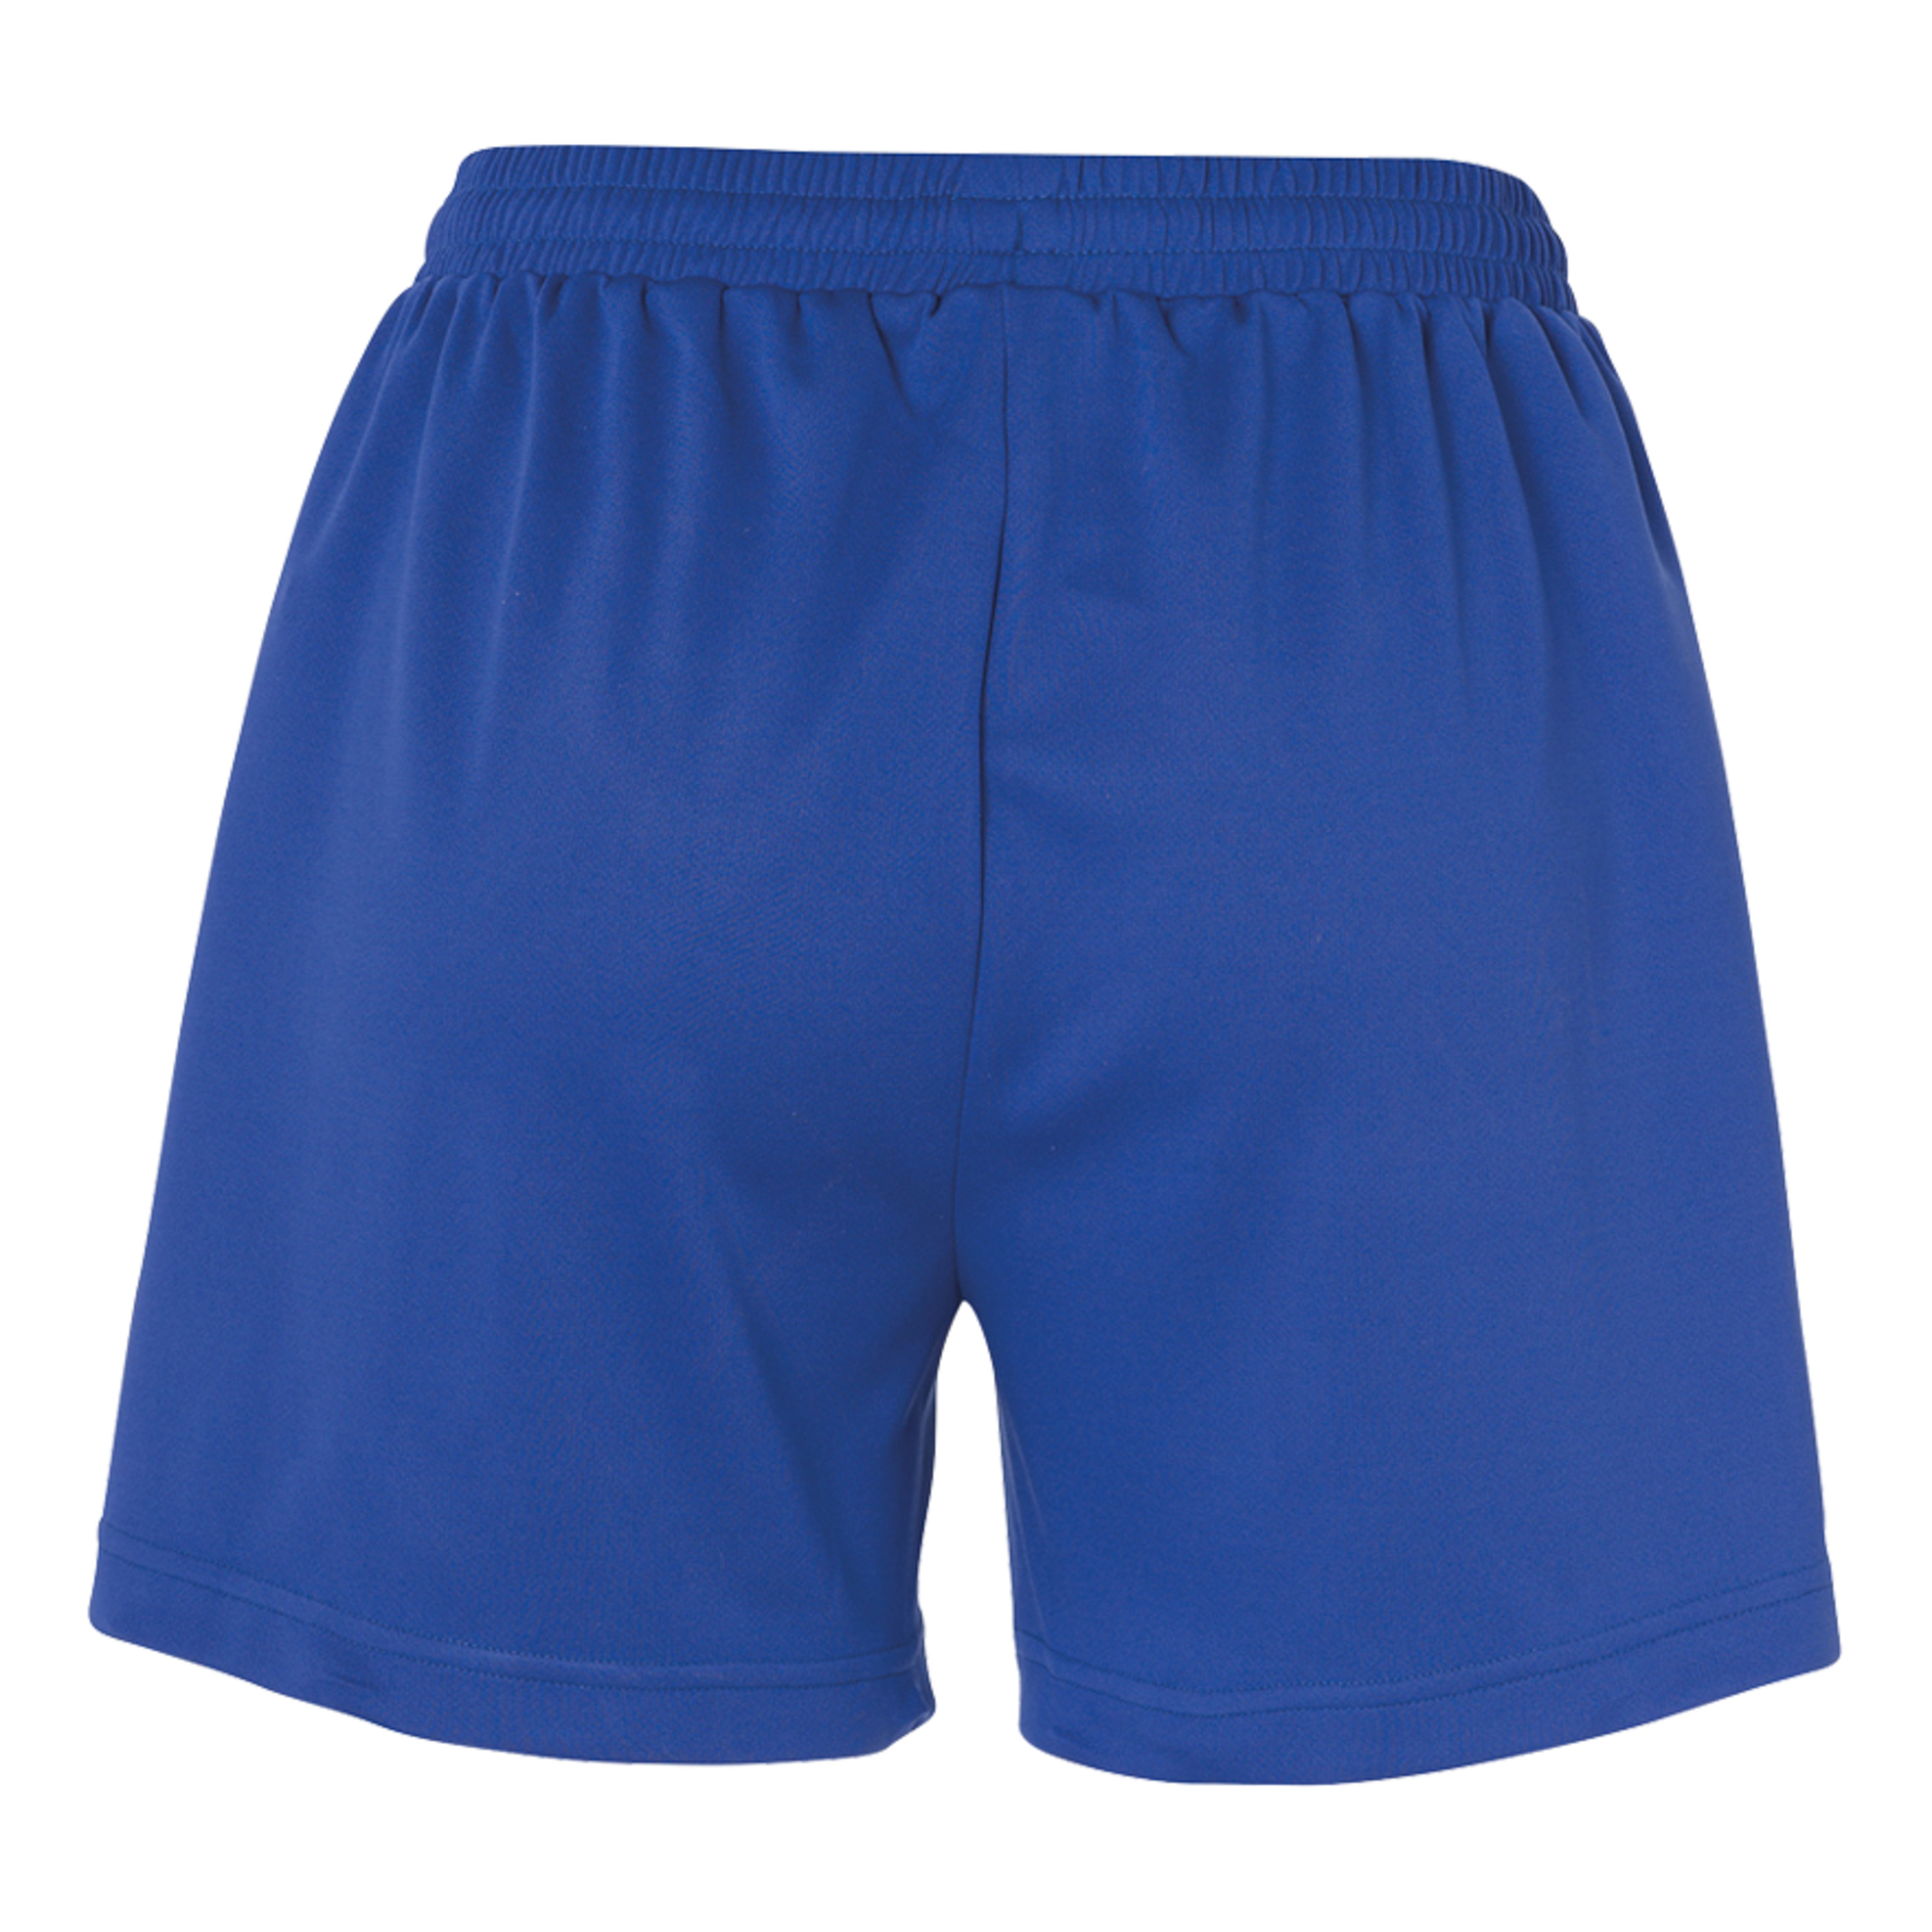 Peak Shorts De Mujer Azul Royal/blanco Kempa